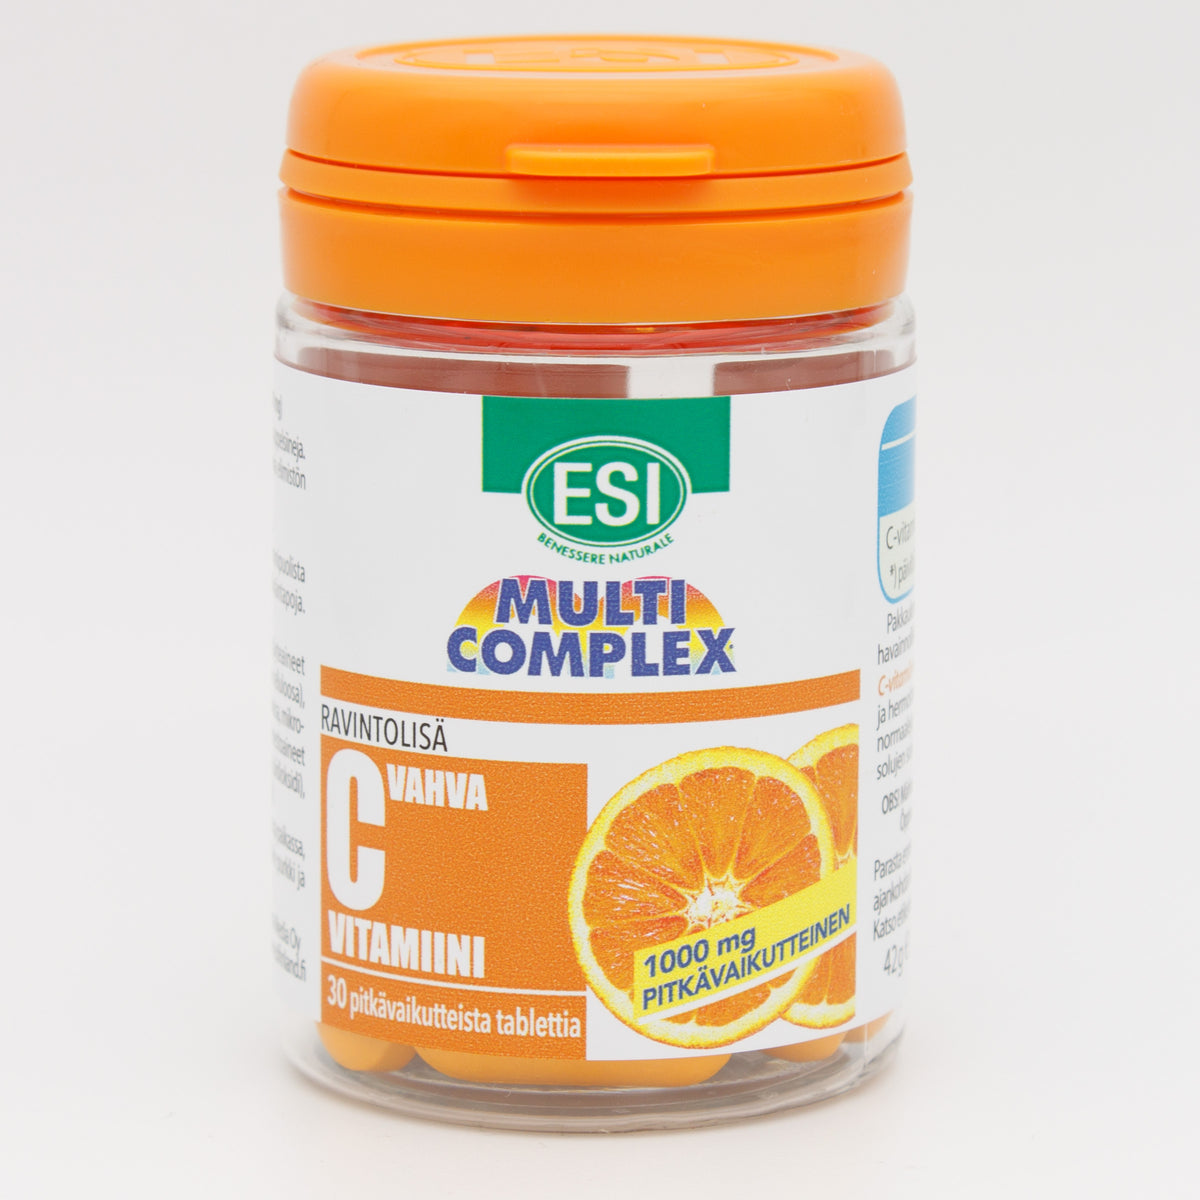 ESI C-vitamiini 1000 mg 30 tabl.